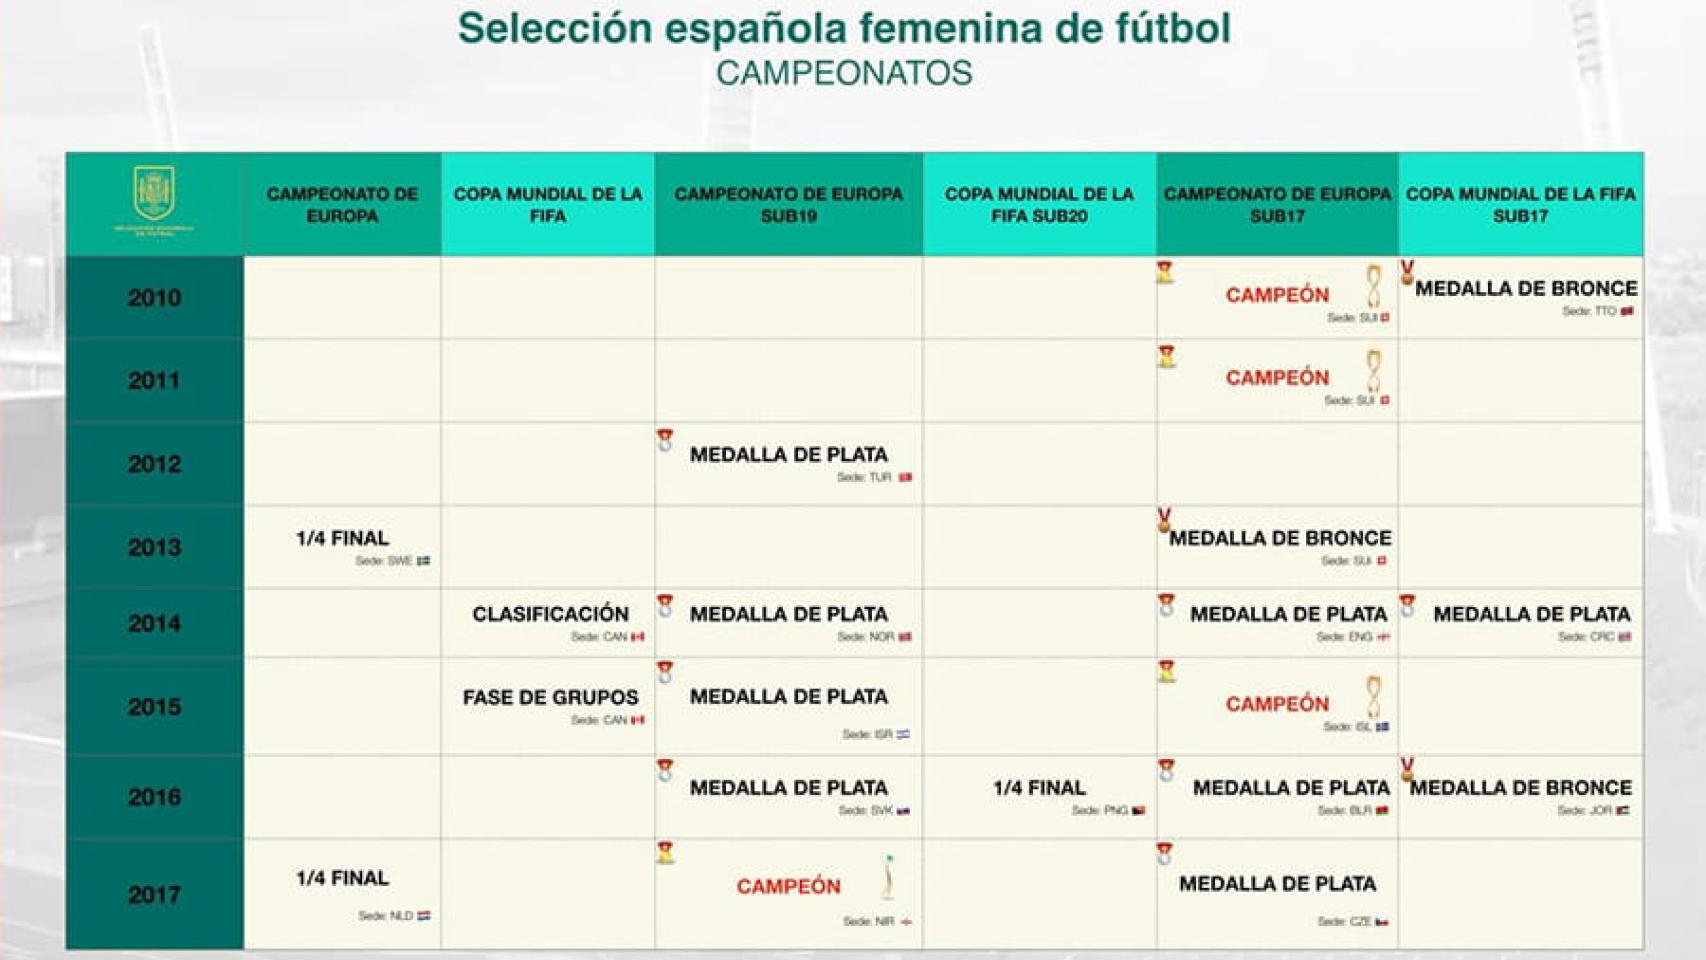 Palmarés del fútbol femenino de la RFEF